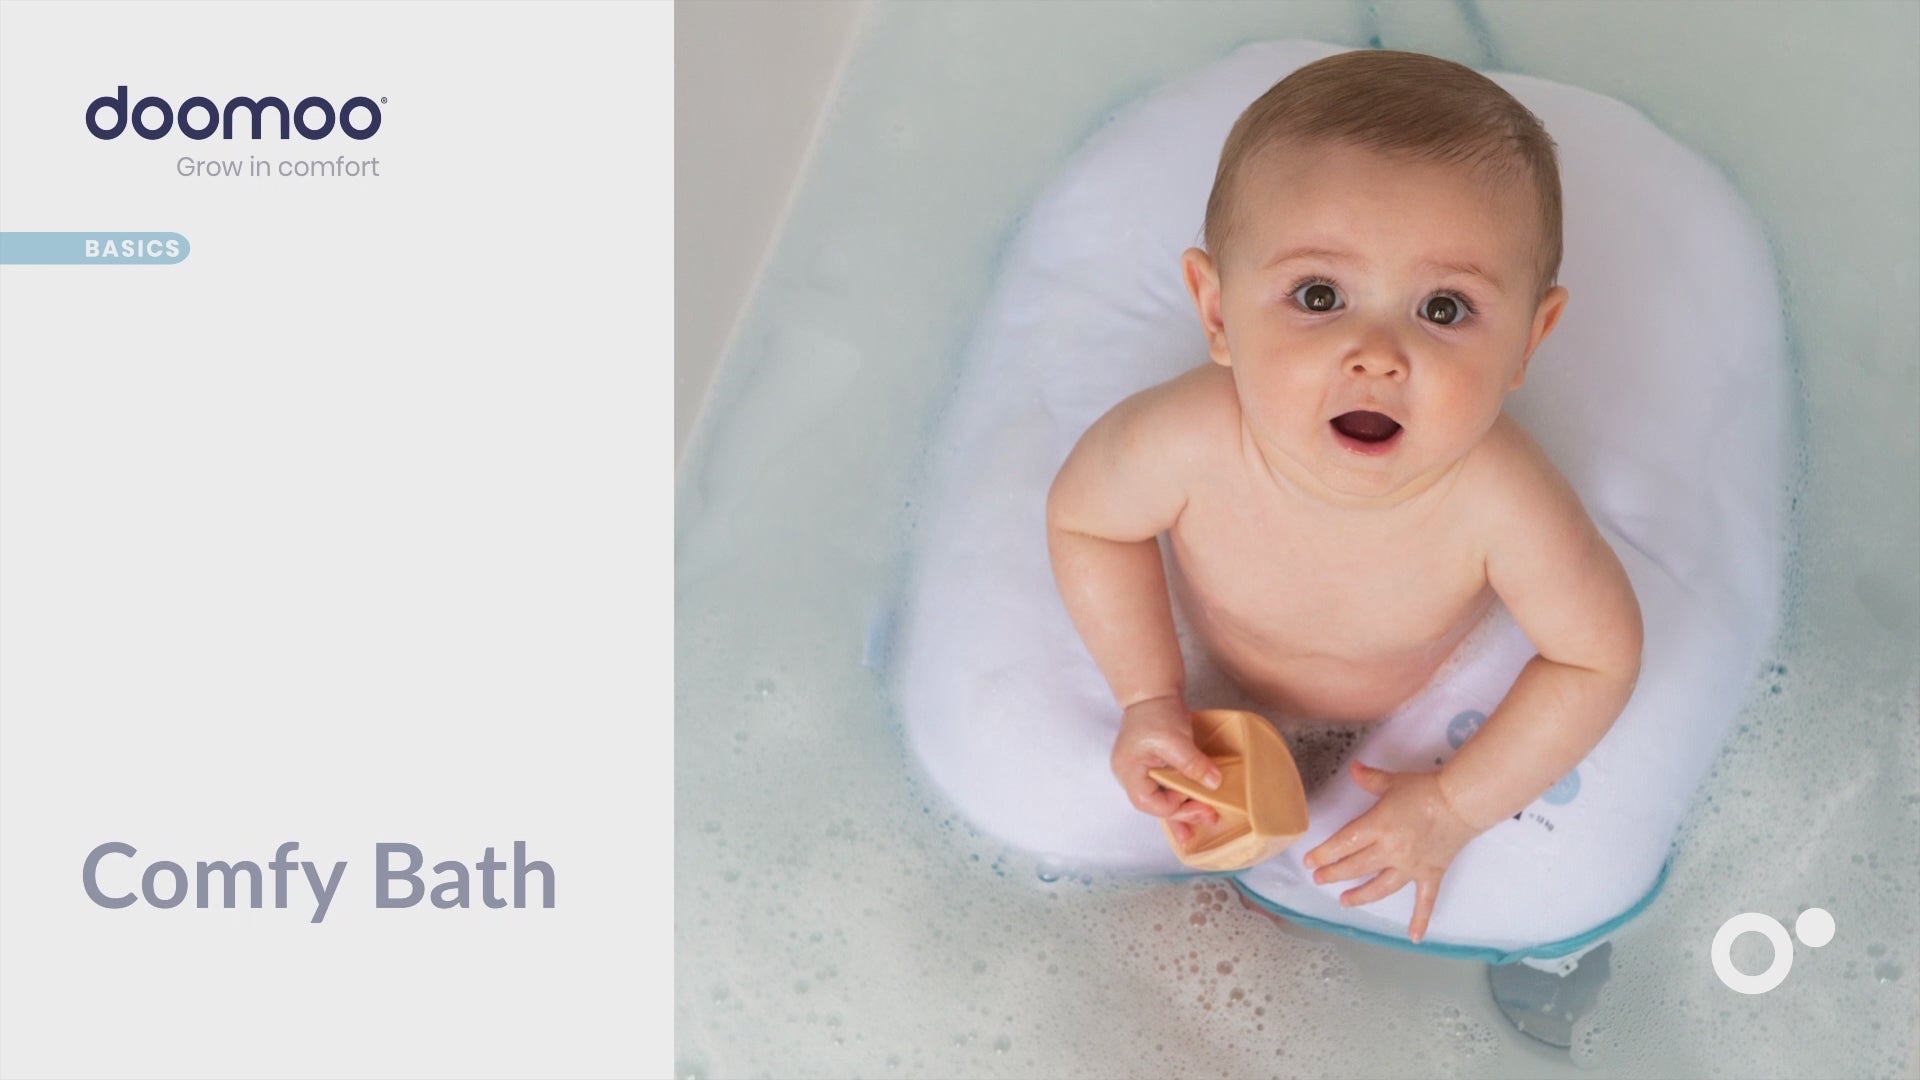 Badekissen, um Ihr Baby freihändig zu baden. Es kann sicher im Wasser liegen oder sitzen. Sicher für das Baby und rückenschonend für die Eltern